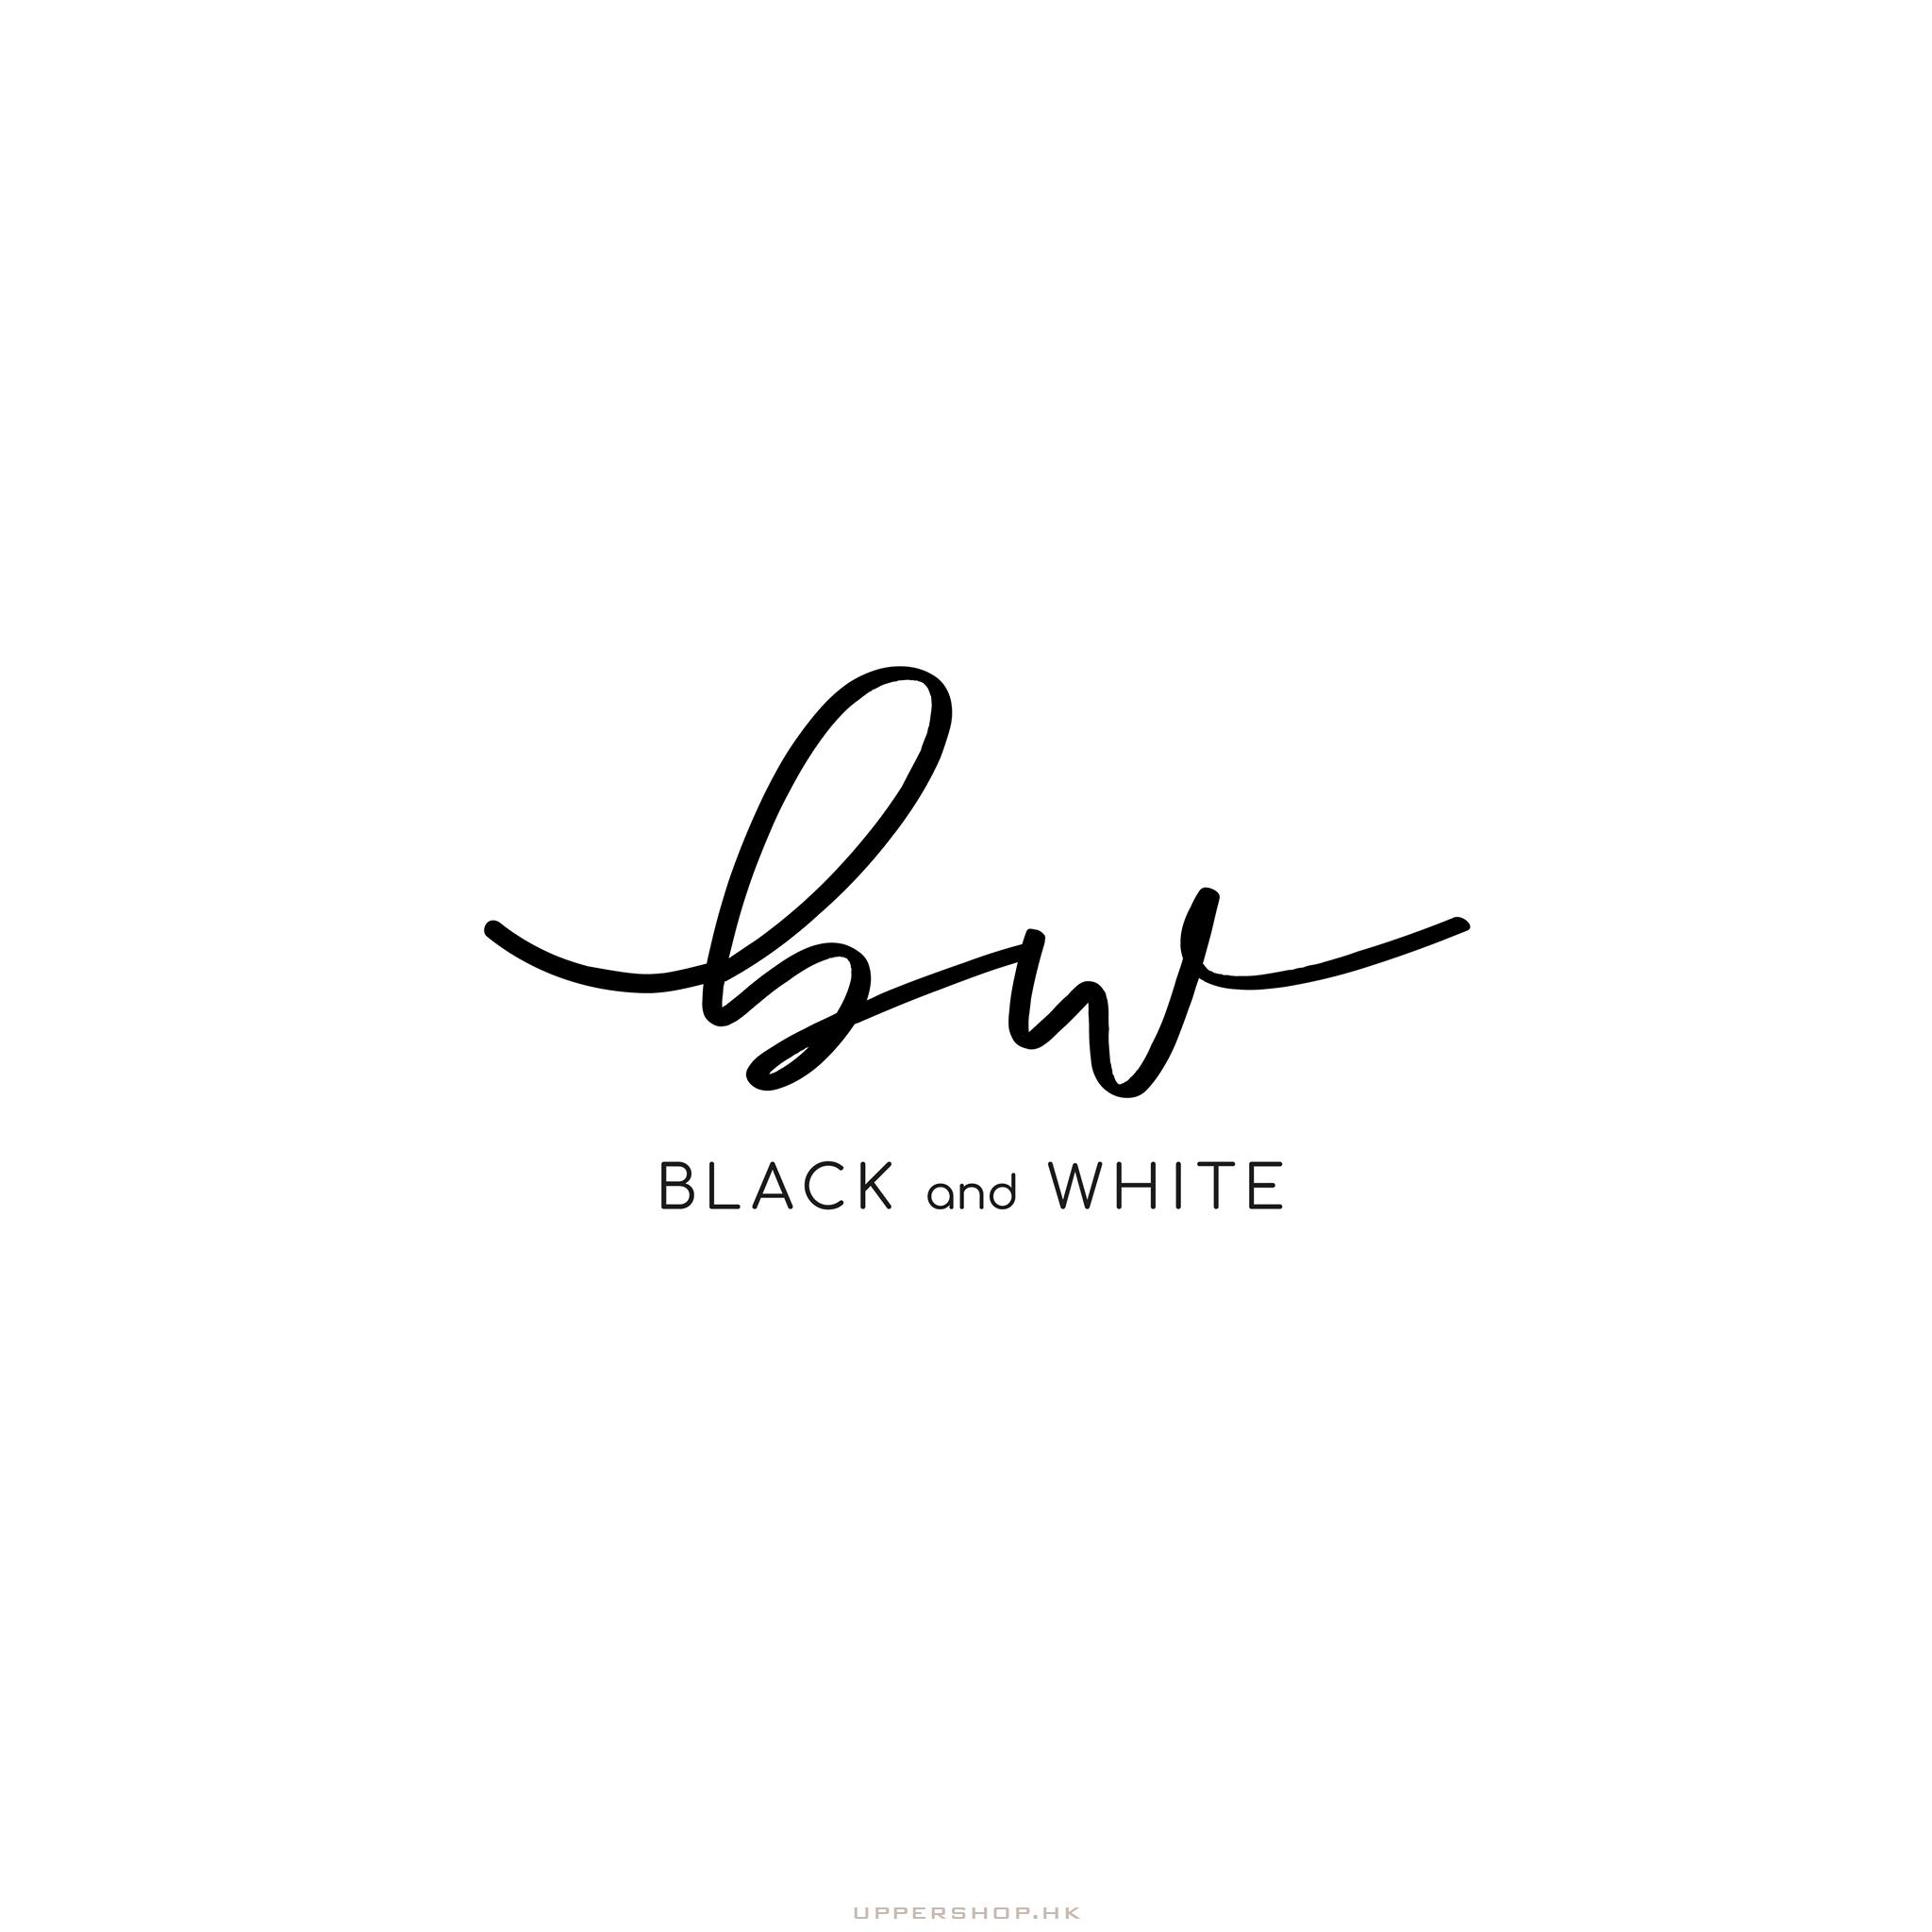 Black & White Studio